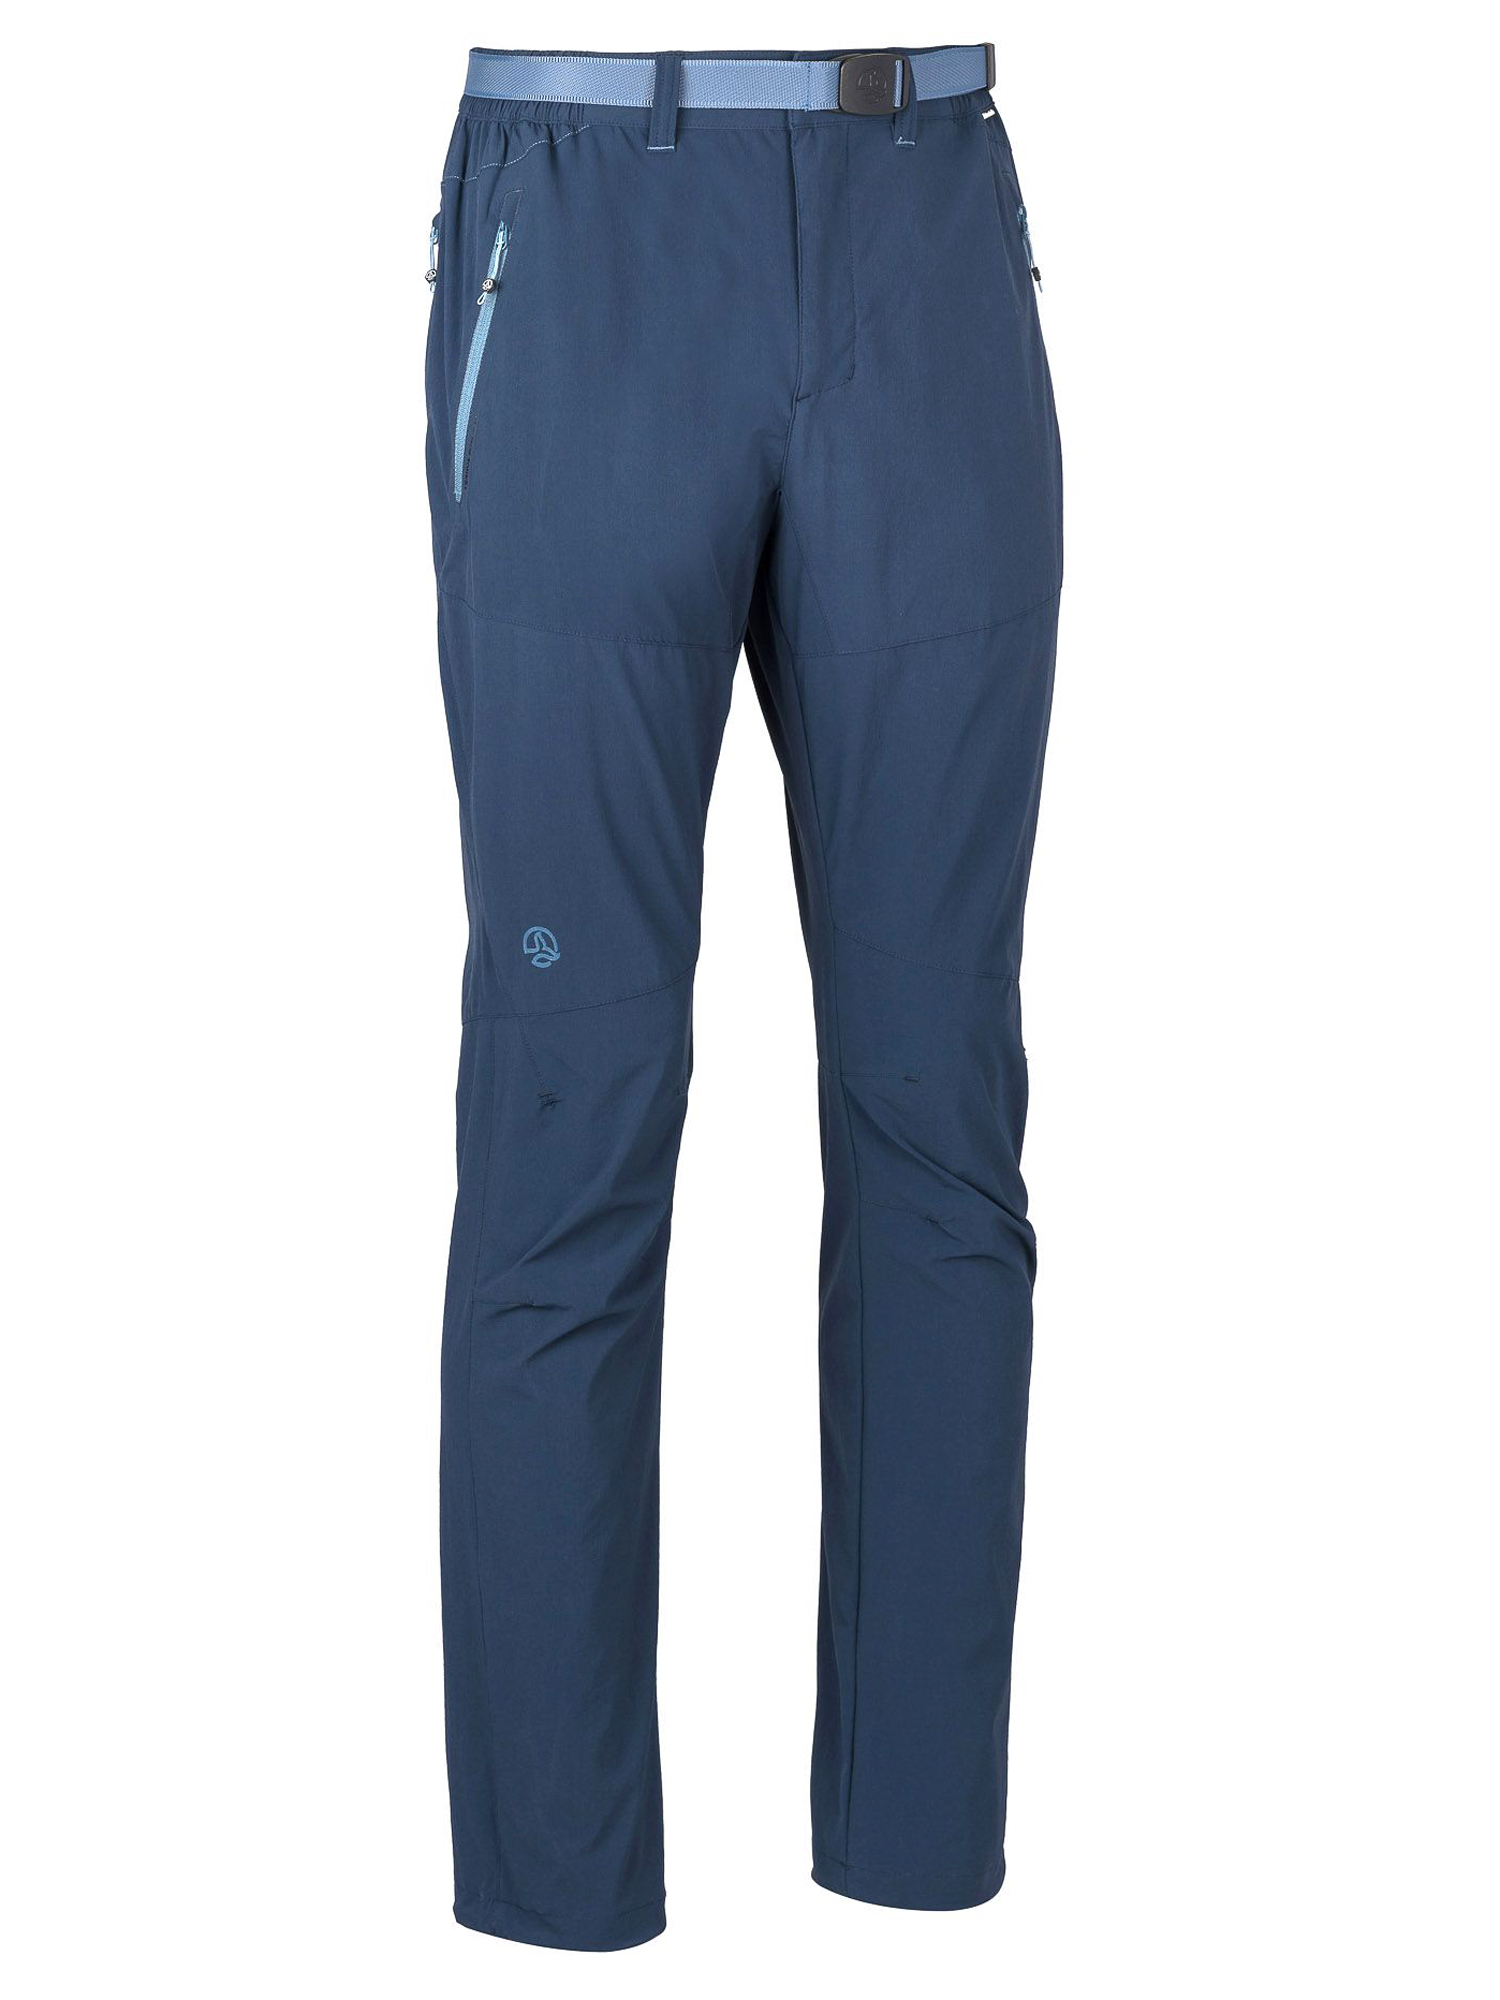 фото Спортивные брюки мужские ternua friz pt m синие xl